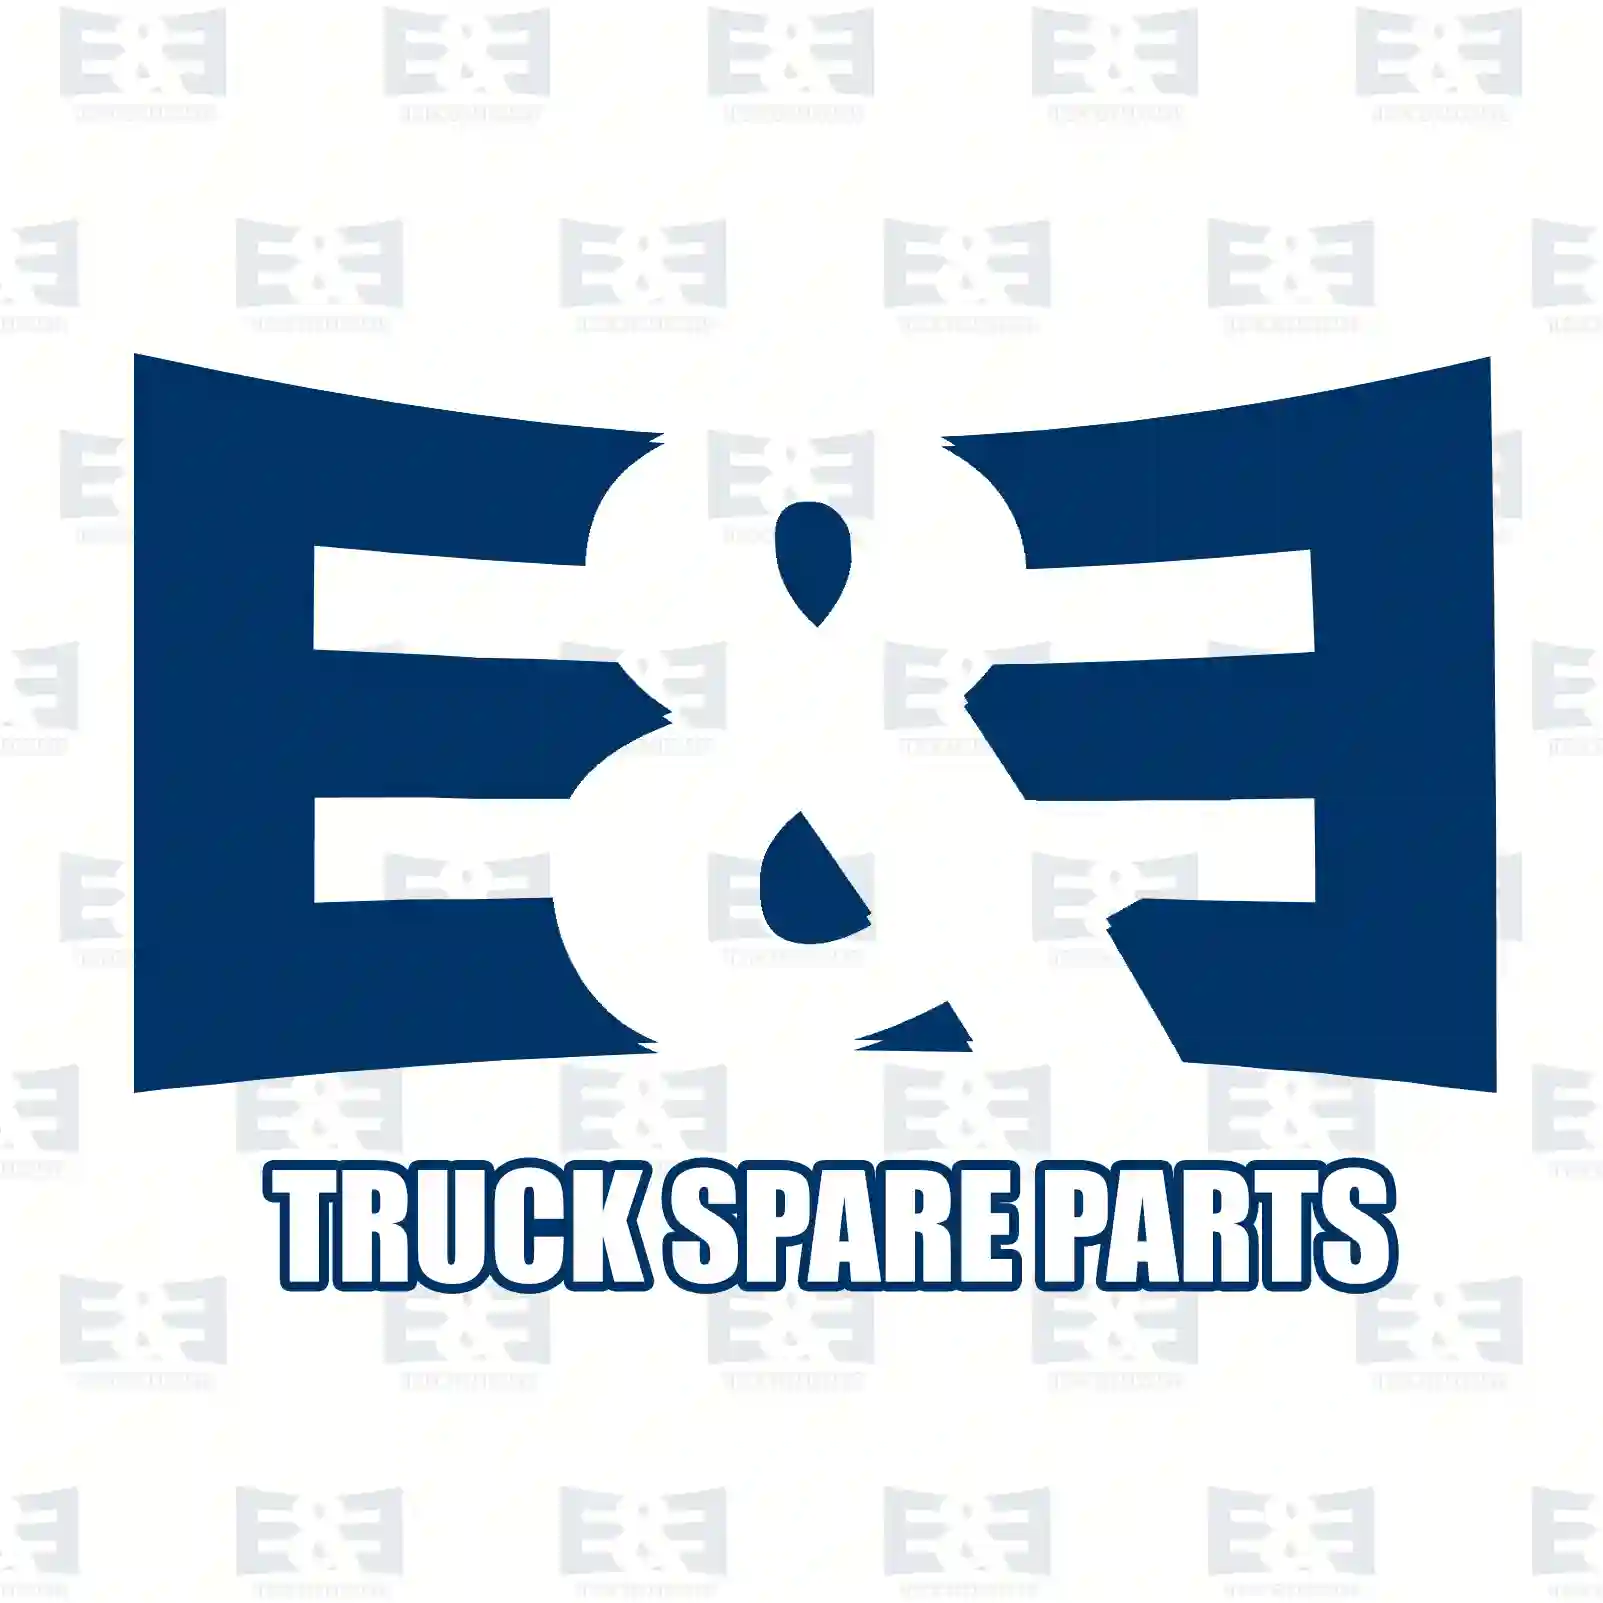 Turbocharger, 2E2200505, 1717628, 1719695, 1760759, 1863278, 1899517, 2175582, BK3Q-6K682-CC, BK3Q-6K682-DA, BK3Q-6K682-PC, BK3Q-6K682-RB, RMBK-3Q6K682-CB ||  2E2200505 E&E Truck Spare Parts | Truck Spare Parts, Auotomotive Spare Parts Turbocharger, 2E2200505, 1717628, 1719695, 1760759, 1863278, 1899517, 2175582, BK3Q-6K682-CC, BK3Q-6K682-DA, BK3Q-6K682-PC, BK3Q-6K682-RB, RMBK-3Q6K682-CB ||  2E2200505 E&E Truck Spare Parts | Truck Spare Parts, Auotomotive Spare Parts